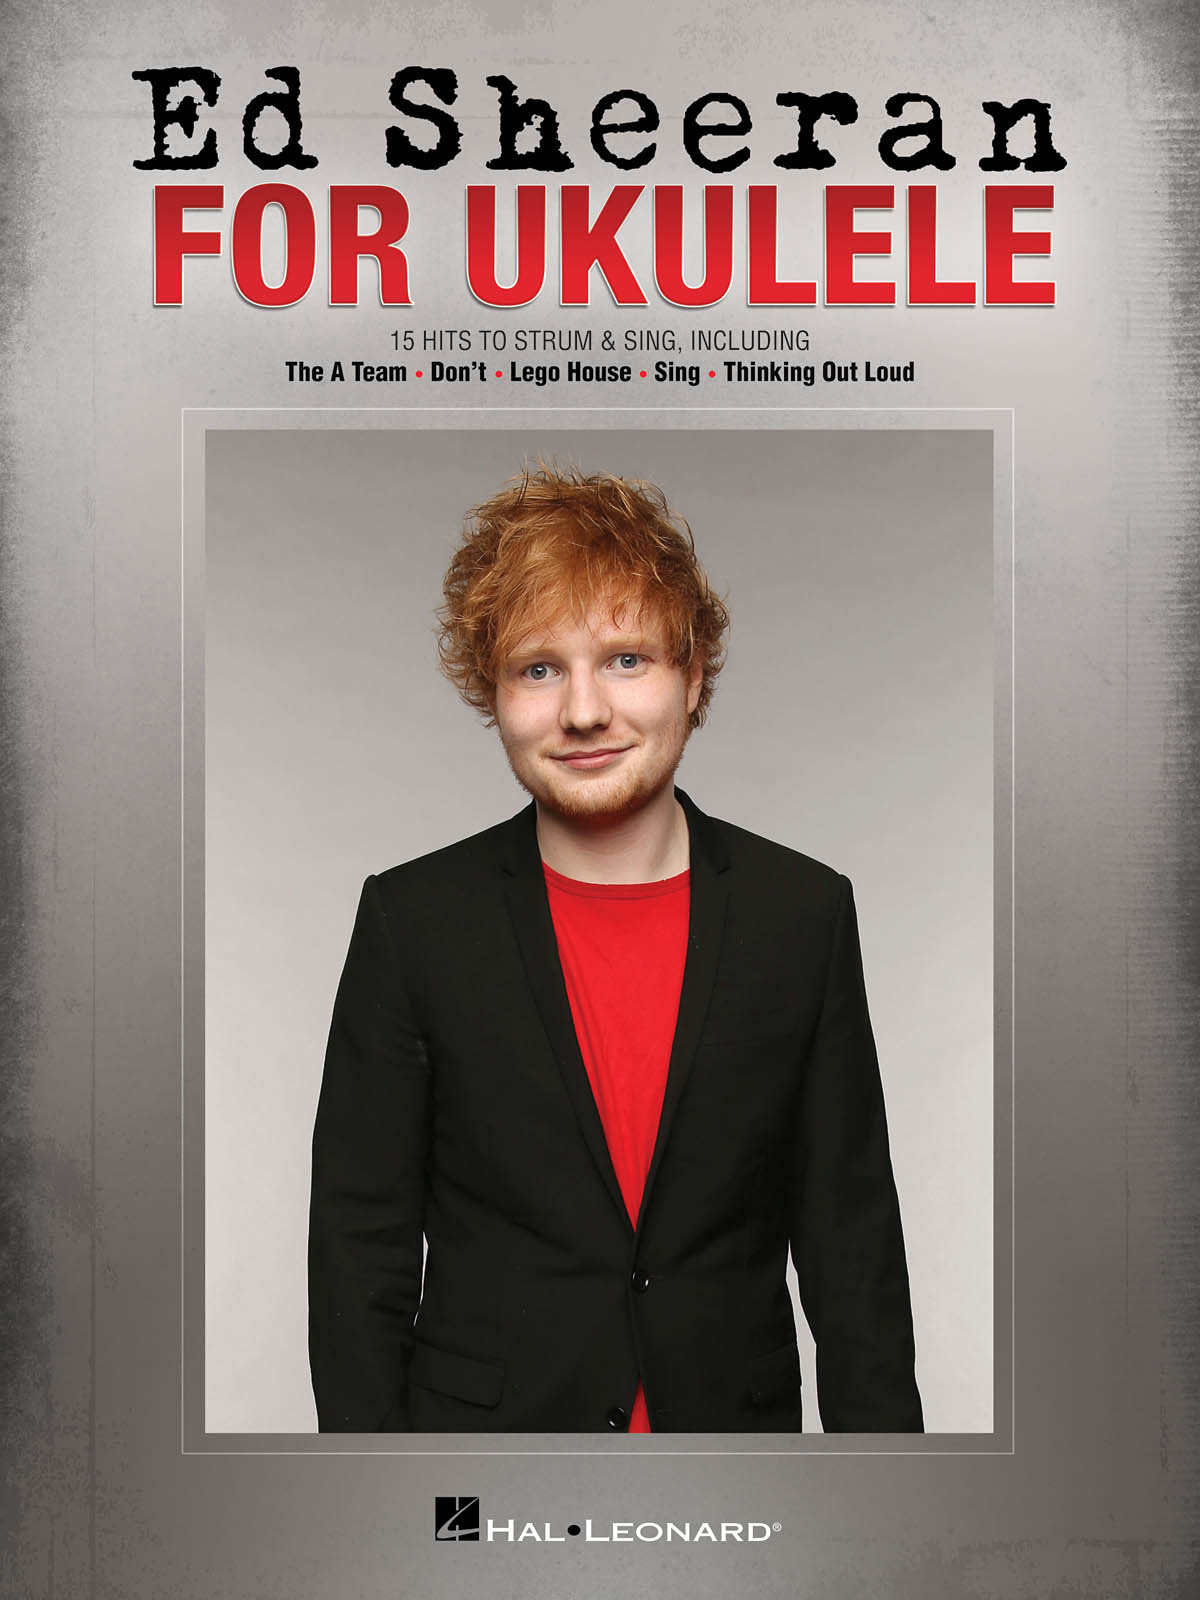 Ed Sheeran for Ukulele - 15 Hits to strum & sing